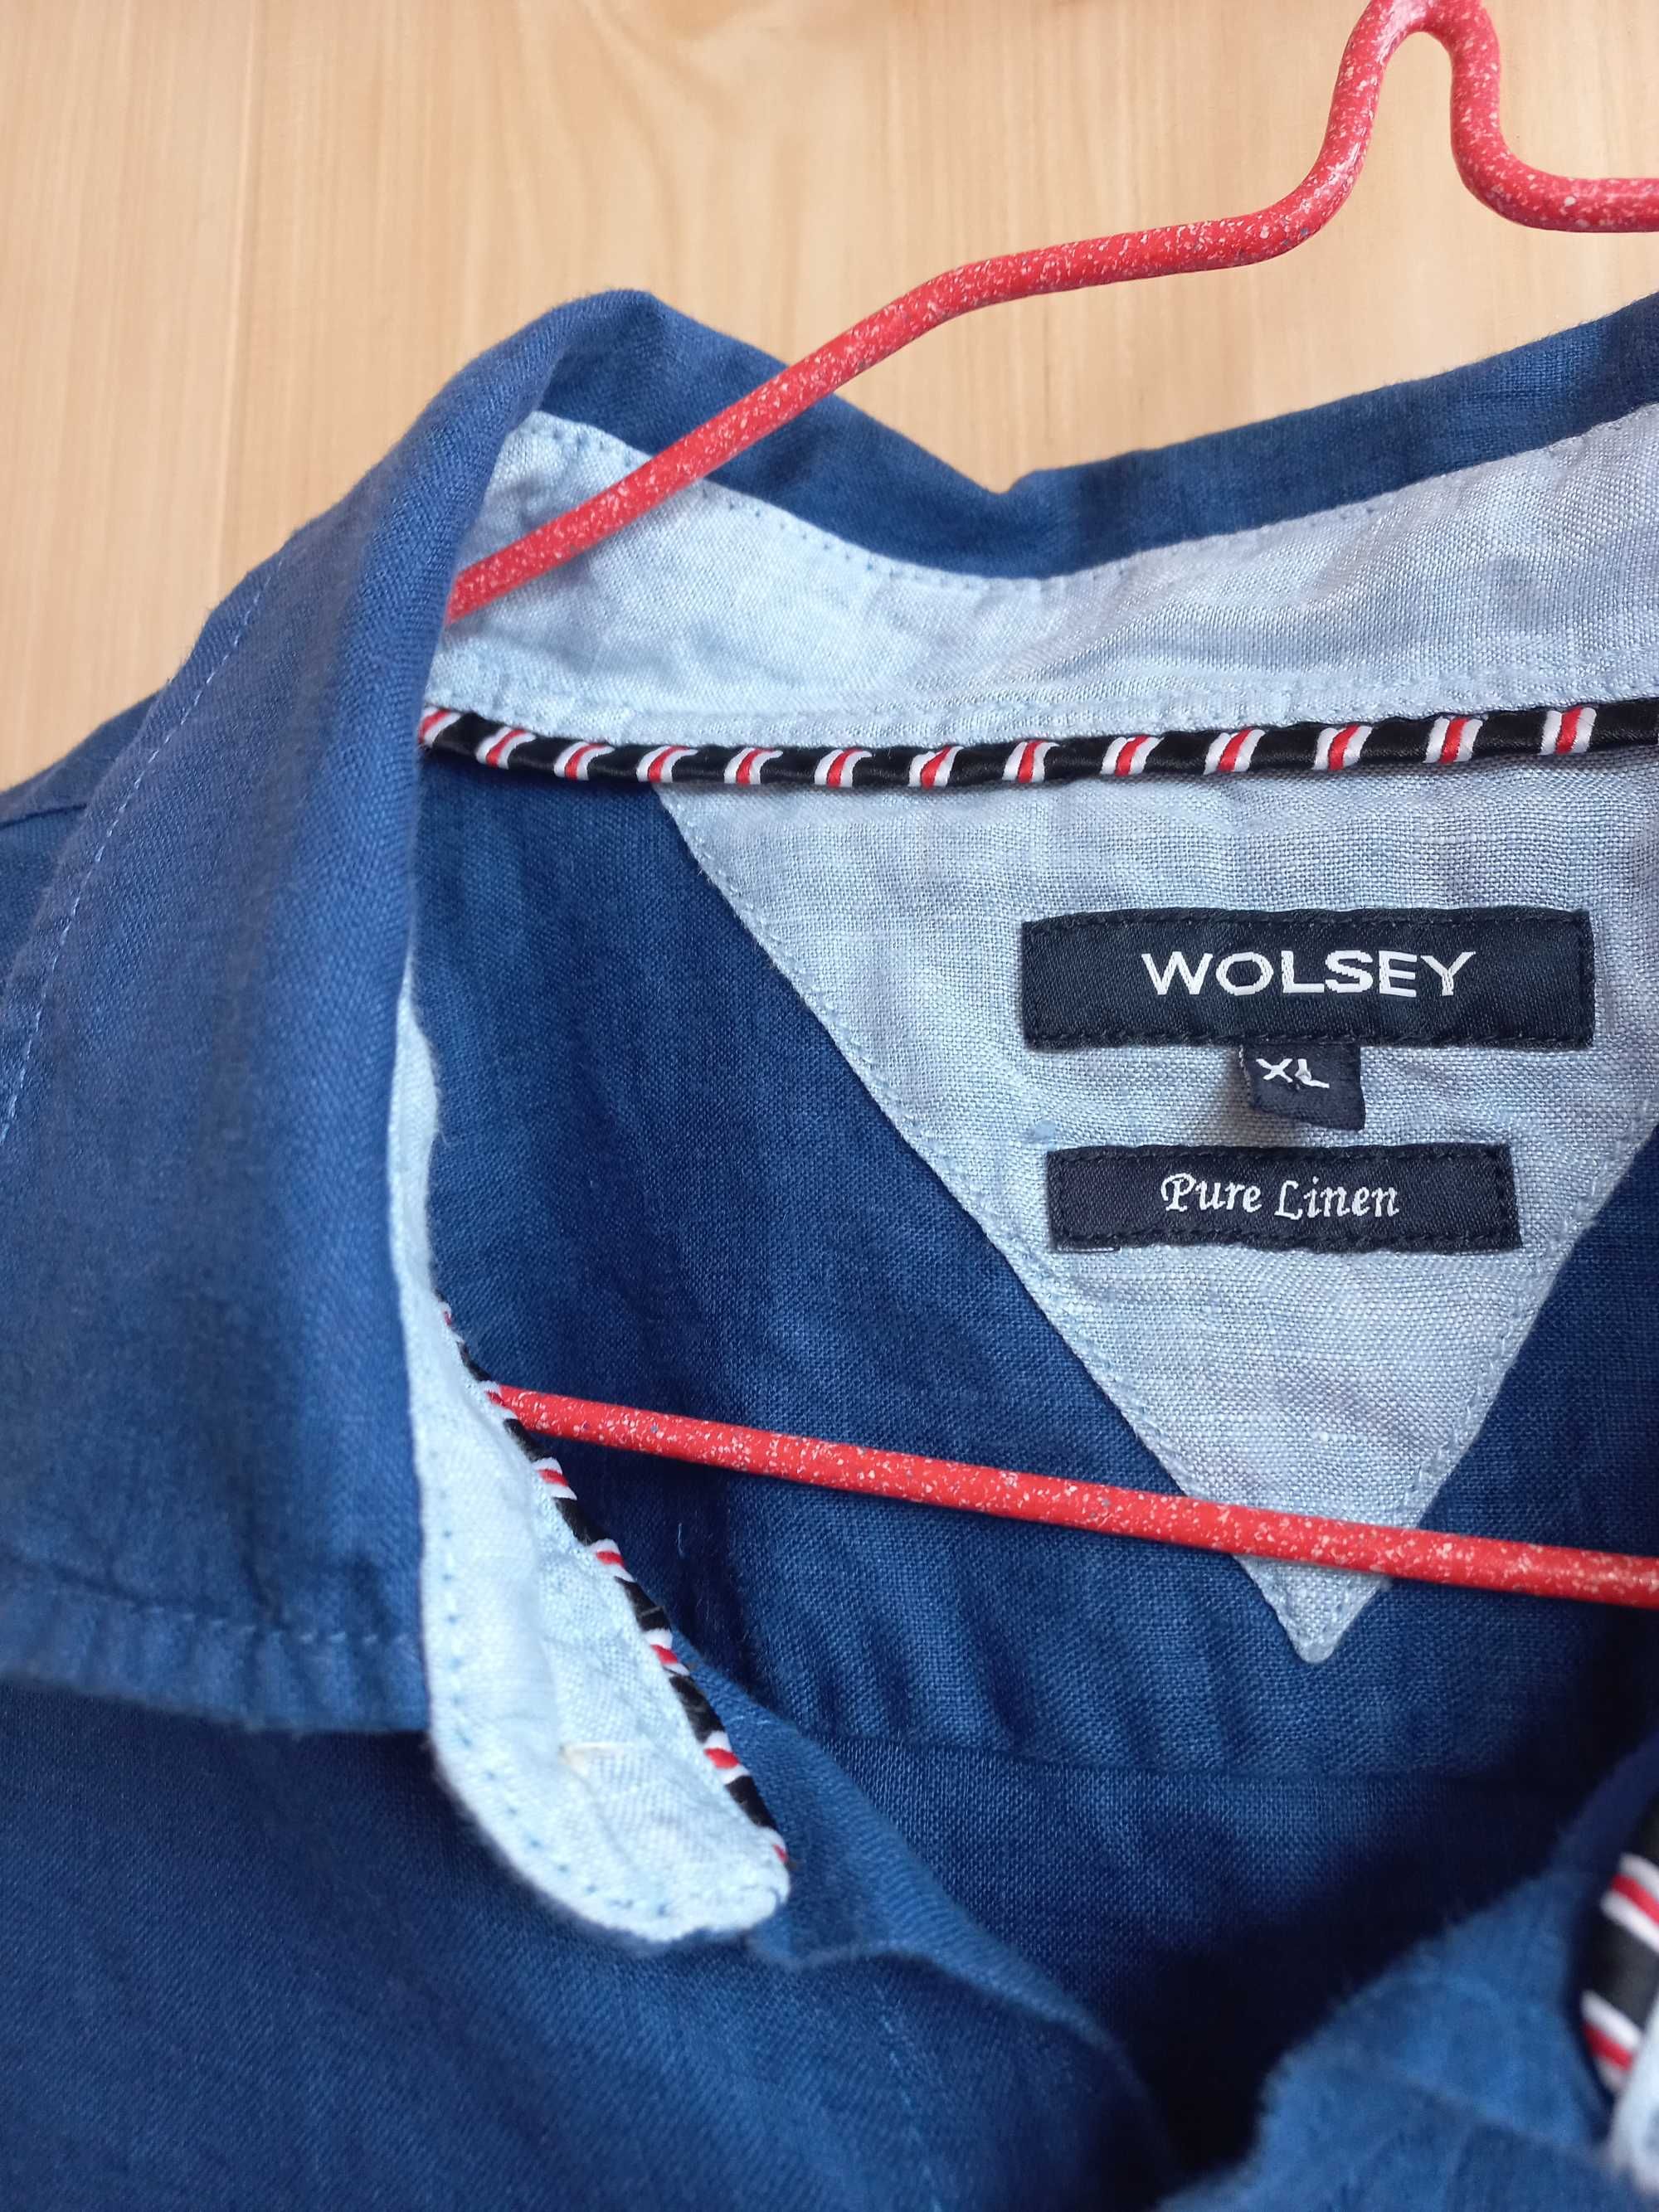 Лен 100% шикарная брендовая рубашка мужская льняная ЛЮКС wolsey 1775